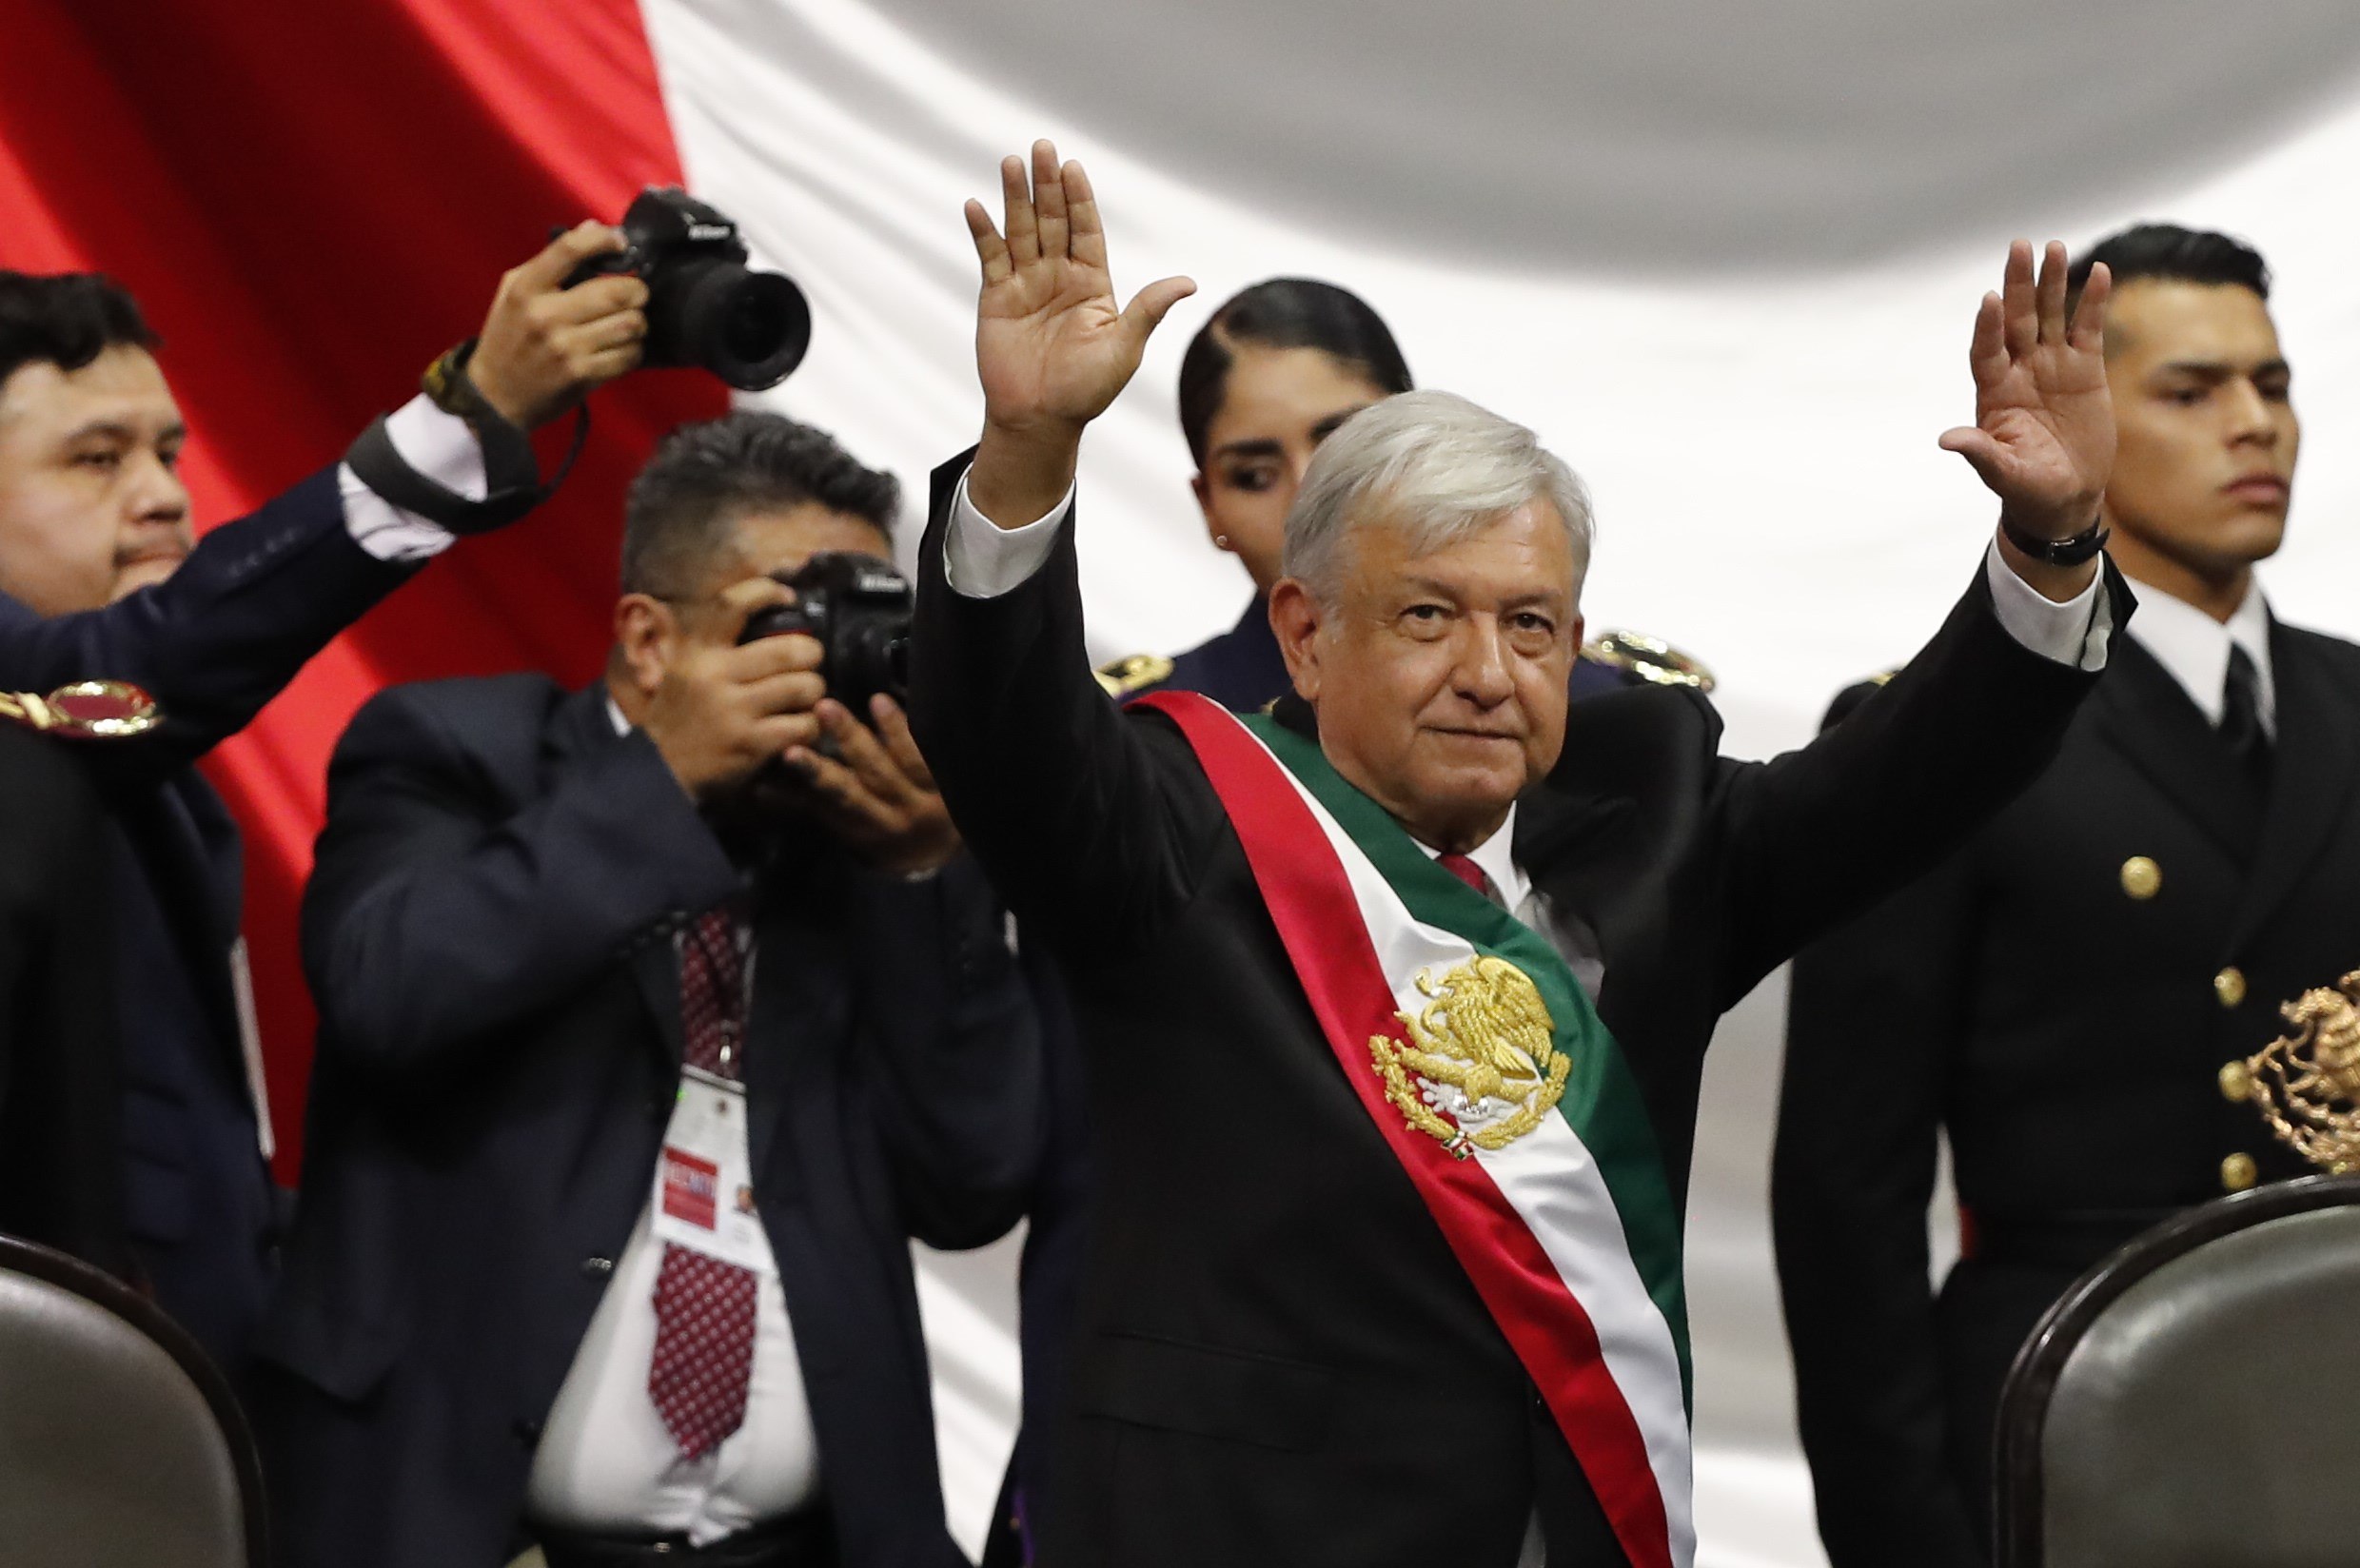 La investidura de López Obrador en imágenes y videos